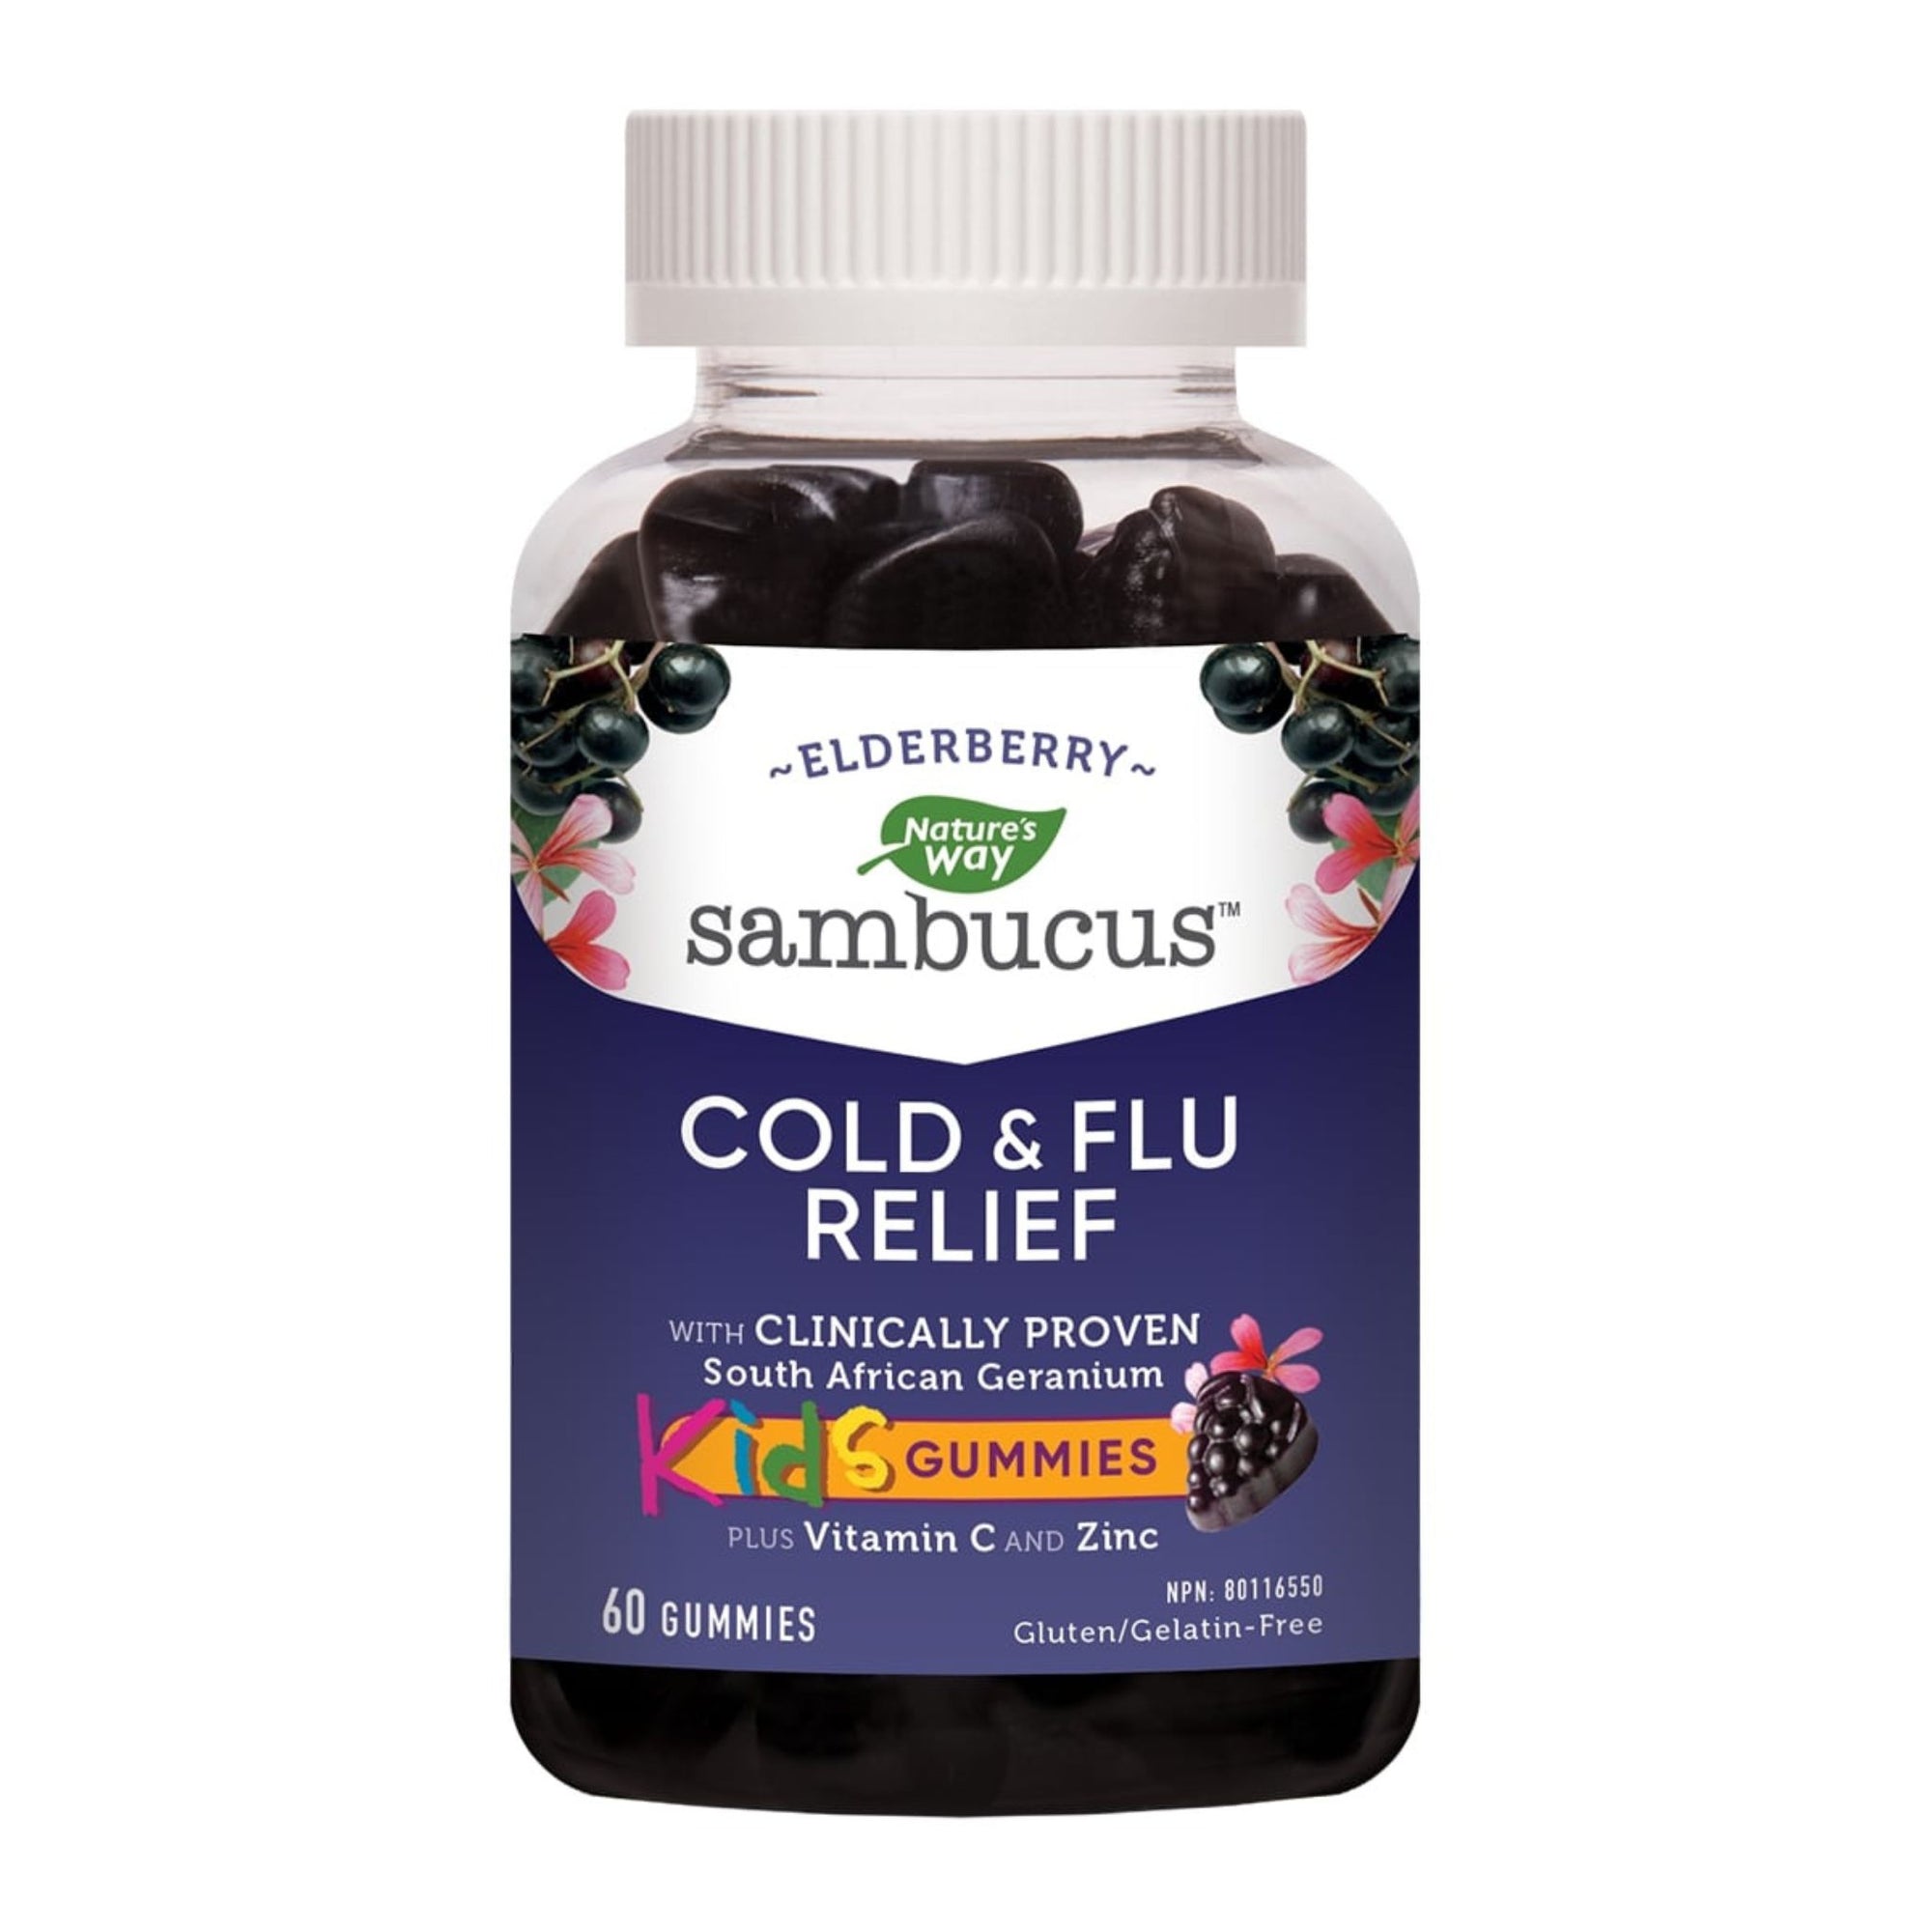 Bottle of Nature's Way Sambucus Relief Kids Gummies 60 per bottle, immune support supplement with elderberry, Vitamin C, and Zinc.